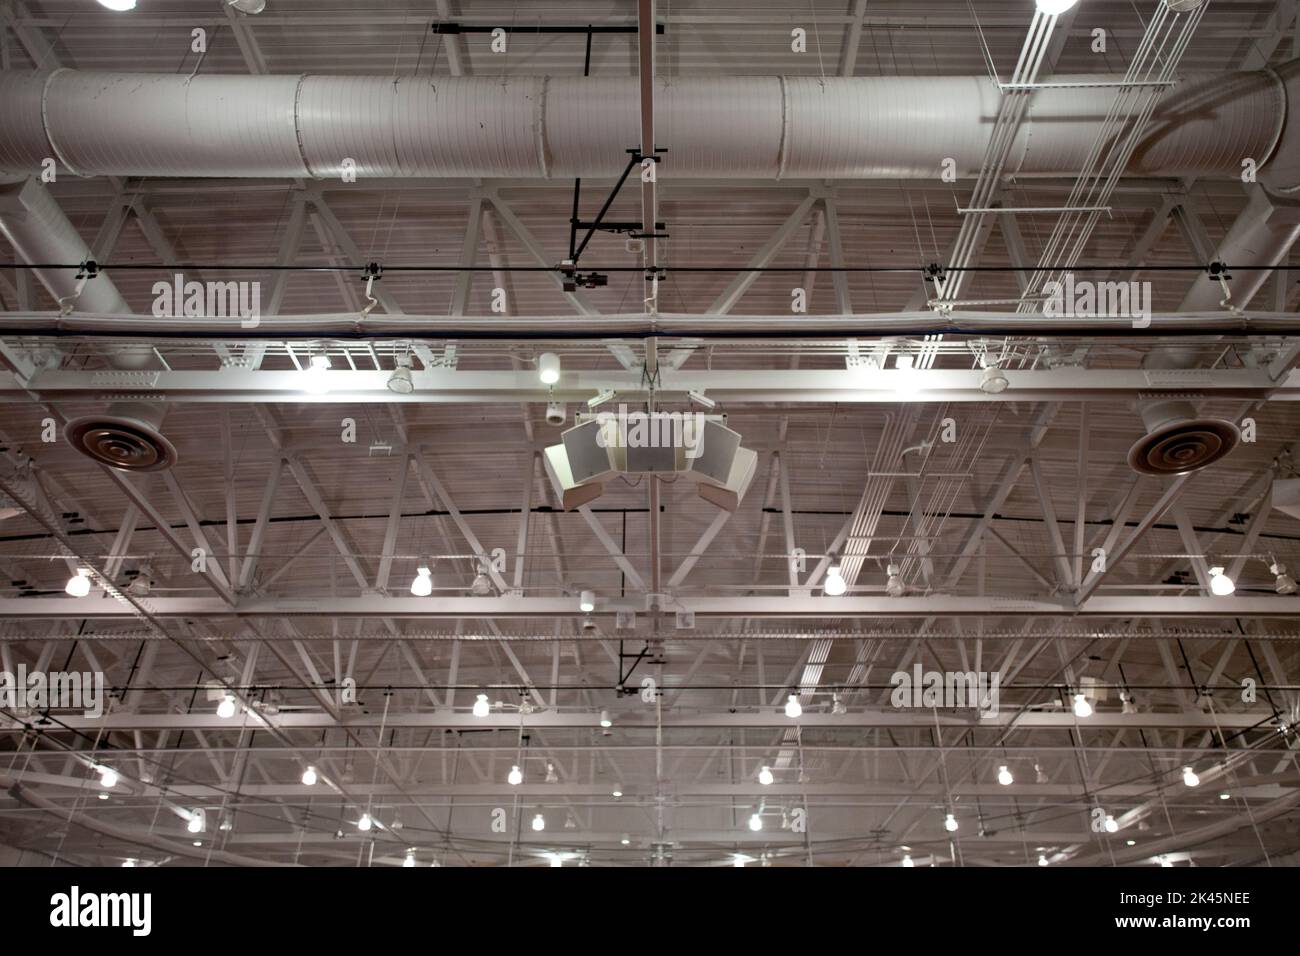 Le plafond d'un grand bâtiment, avec conduits et tuyaux d'air, les chevrons, le statif et les béquilles, les haut-parleurs du système sonore, les éclairages et les unités d'extraction. Banque D'Images